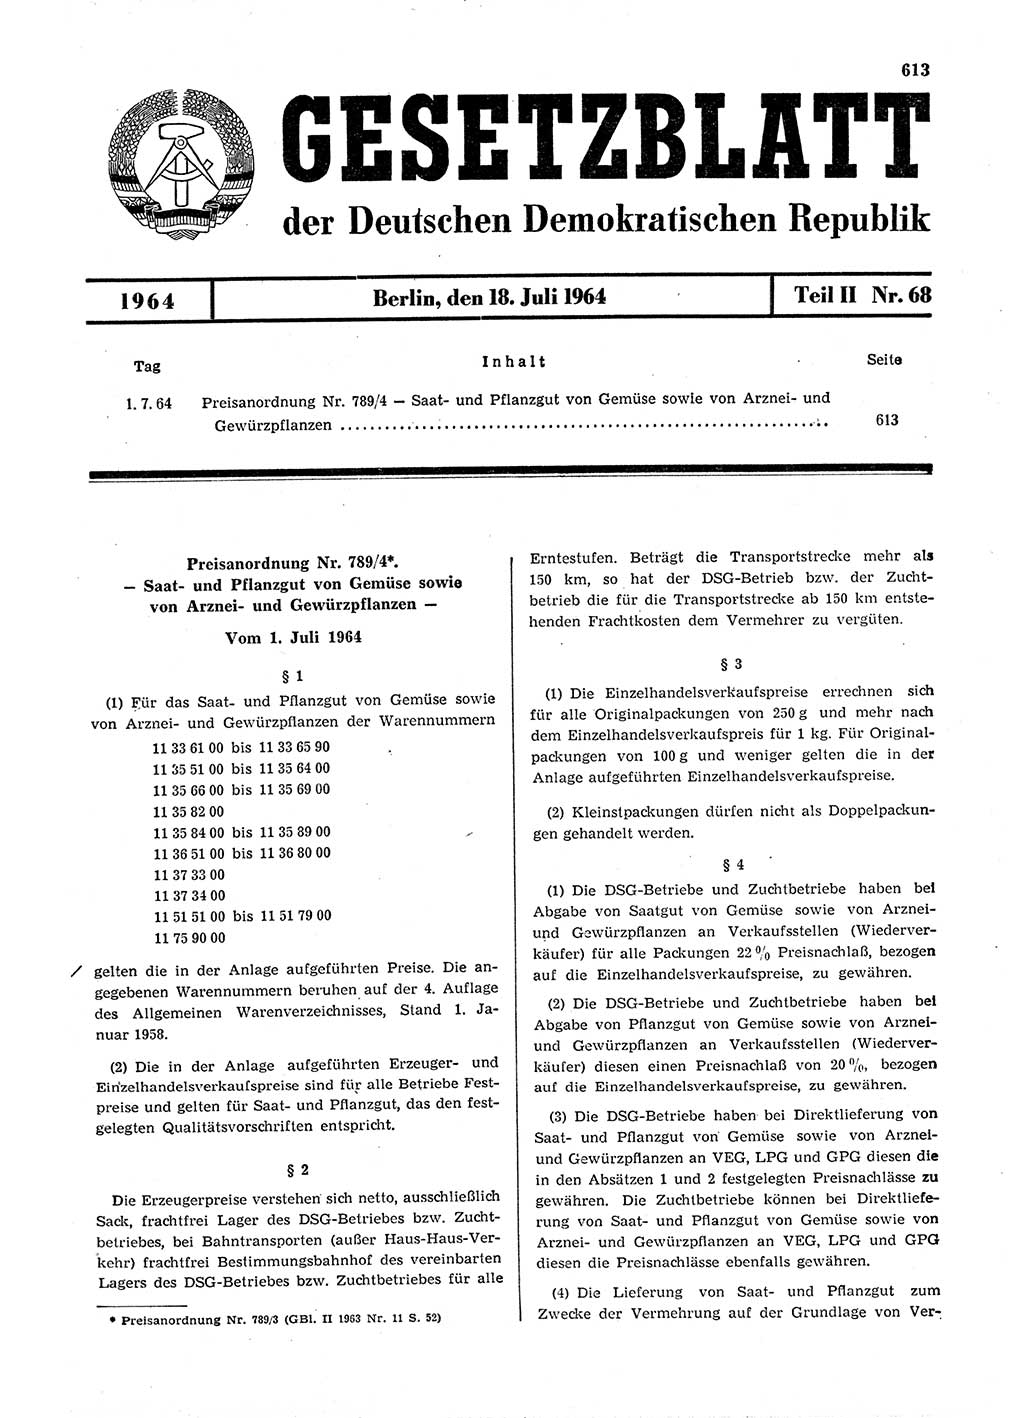 Gesetzblatt (GBl.) der Deutschen Demokratischen Republik (DDR) Teil ⅠⅠ 1964, Seite 613 (GBl. DDR ⅠⅠ 1964, S. 613)